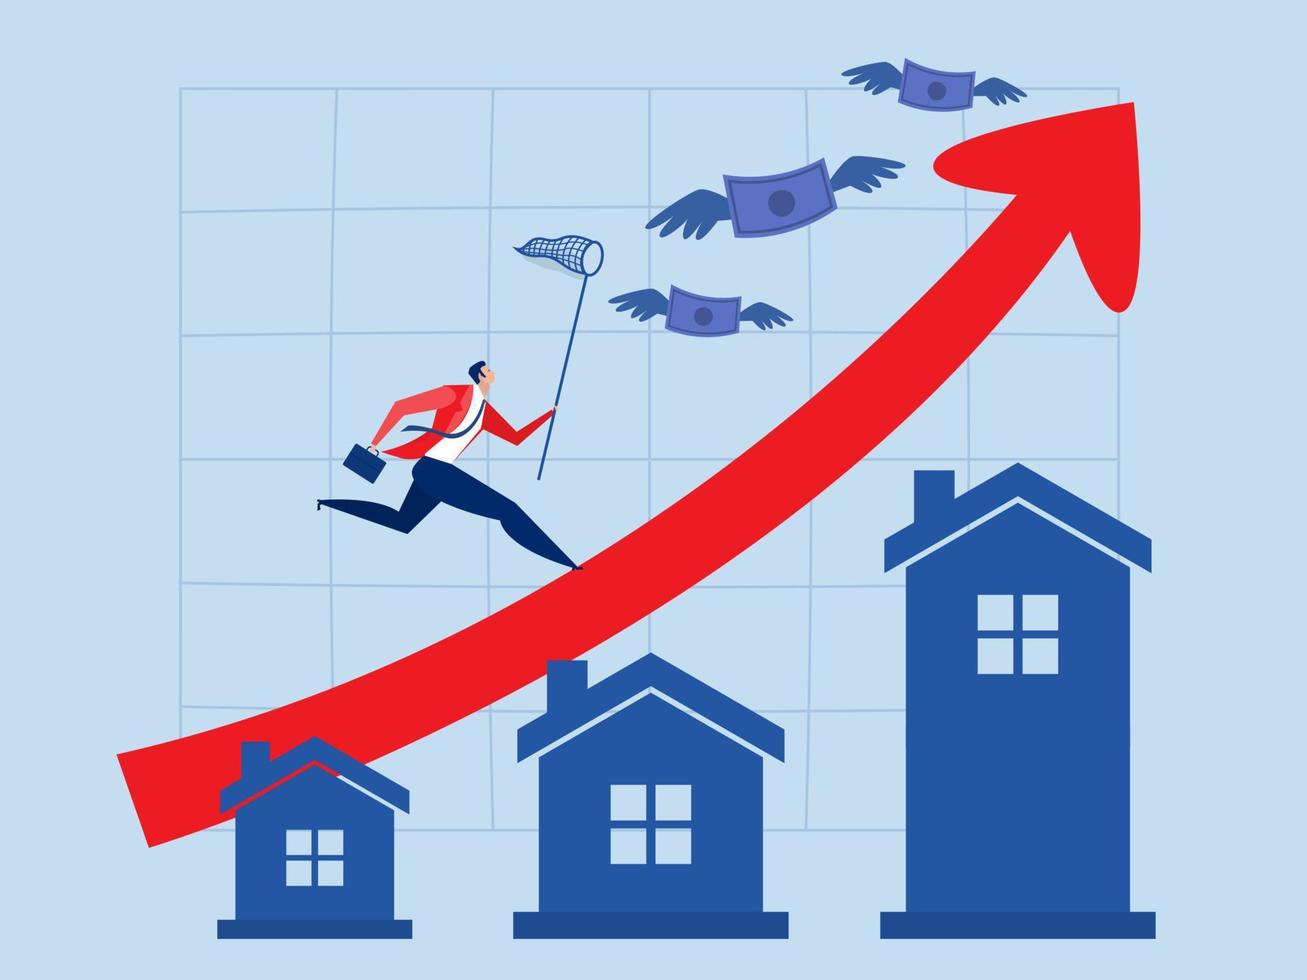 inflation logement prix en hausse en haut ,homme d'affaire fonctionnement sur en hausse rouge graphique sur maison prix en haut une réel biens ou propriété croissance concept plat vecteur illustrateur